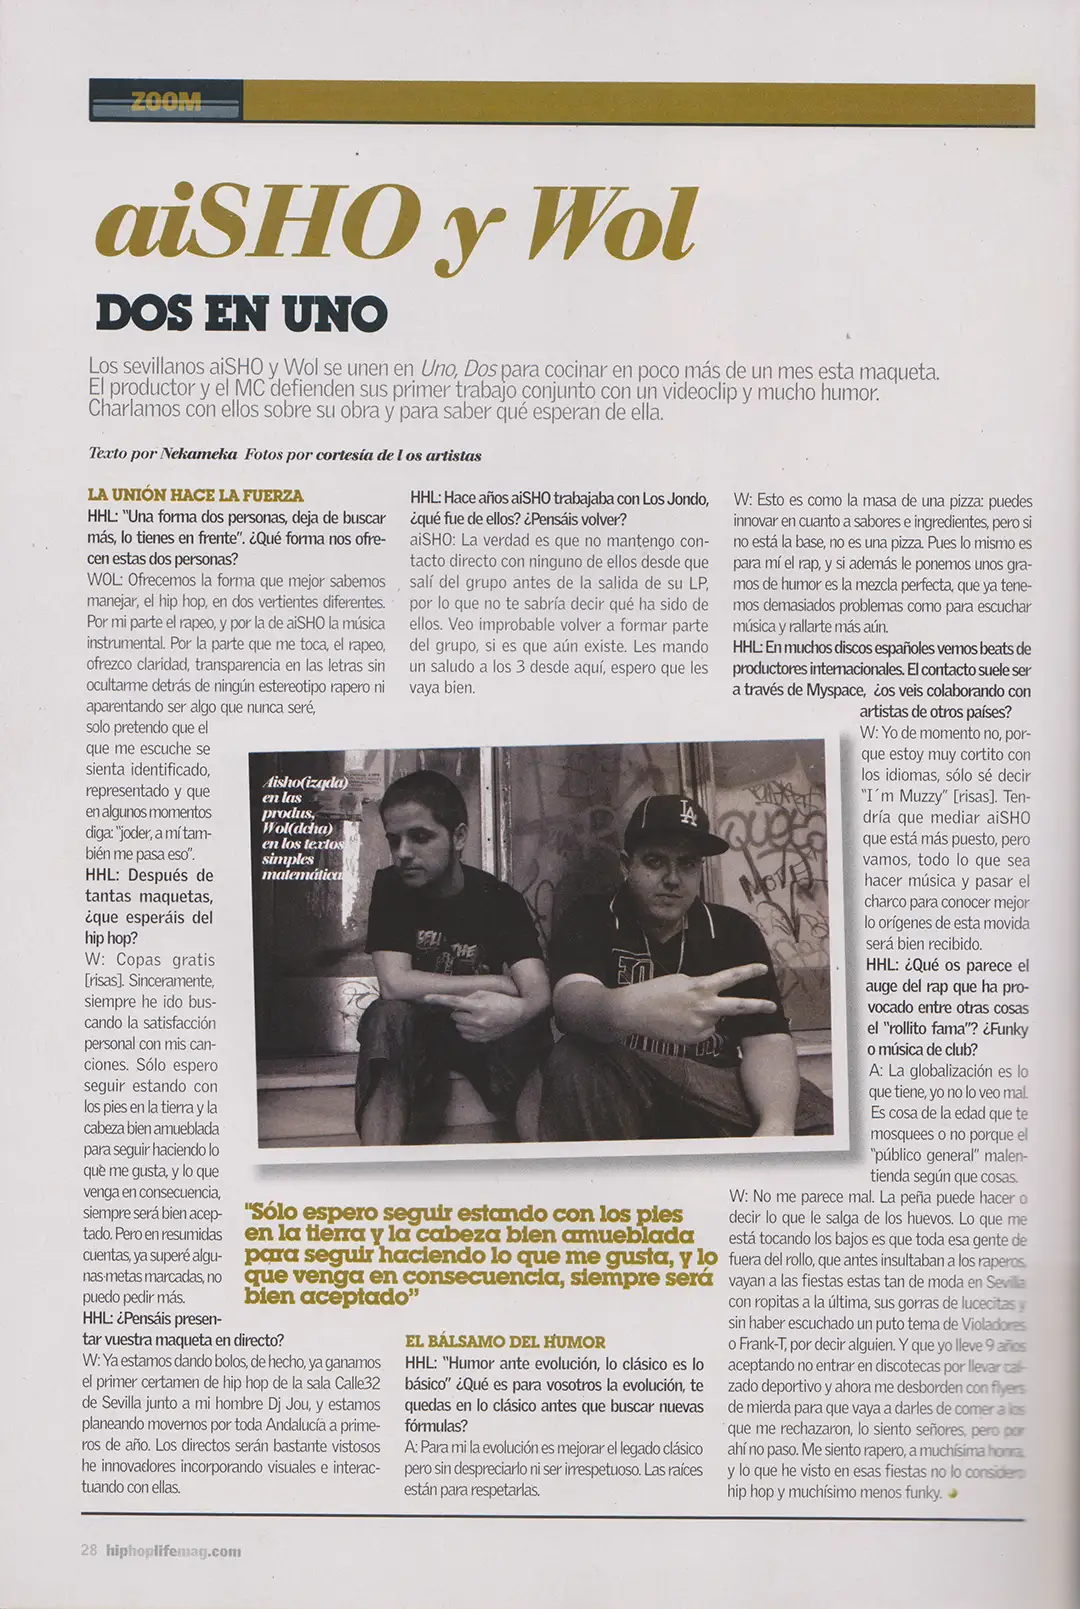 Entrevista a aiSHO y Wol Por Uno Dos en HipHopLife Número 11 (Julio 2010)